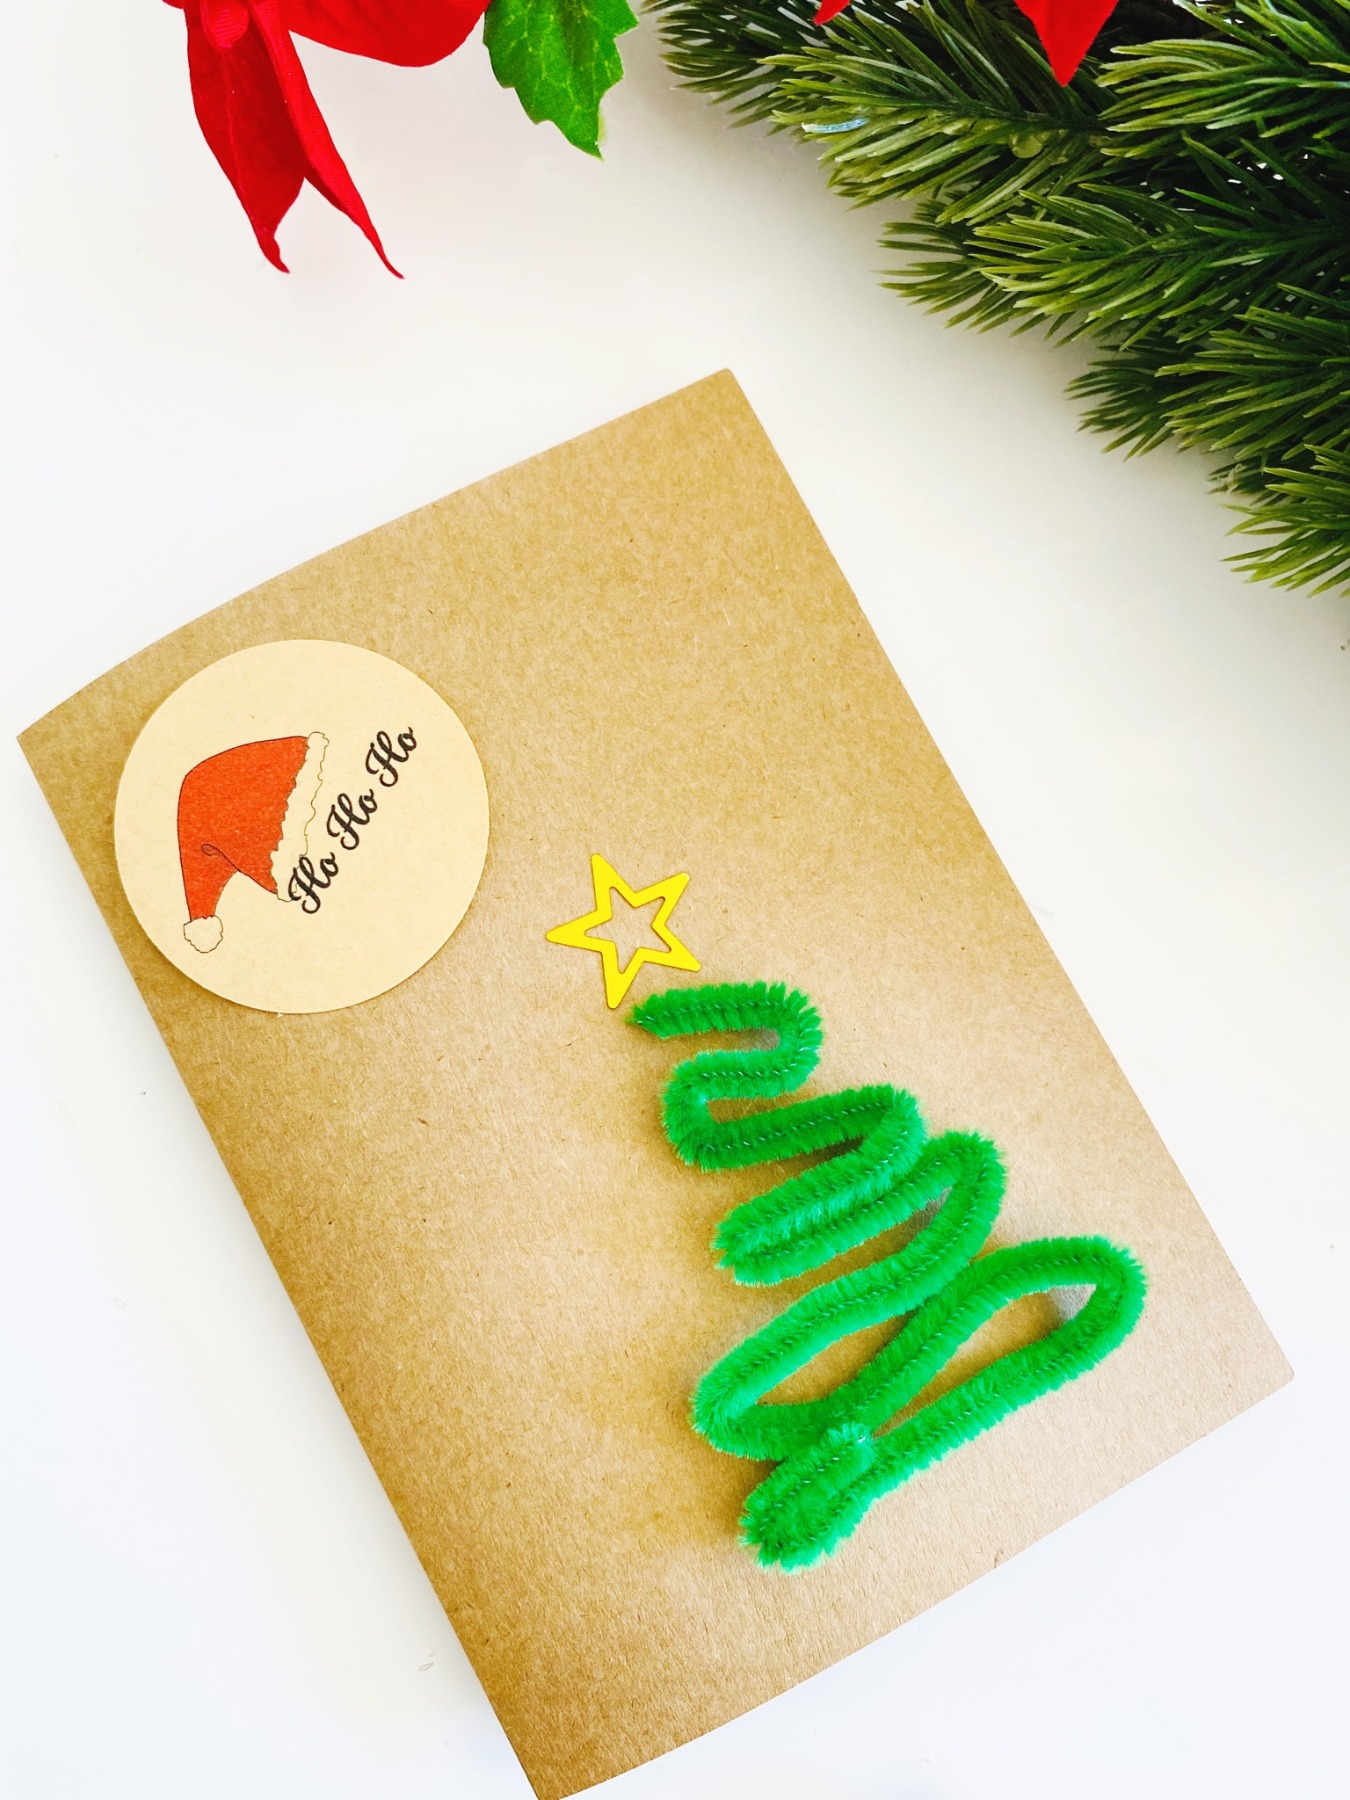 Bastelset für Weihnachten, DIY Kit Weihnachtskarten basteln, Weihnachtsgeschenke verpacken Ideen 27